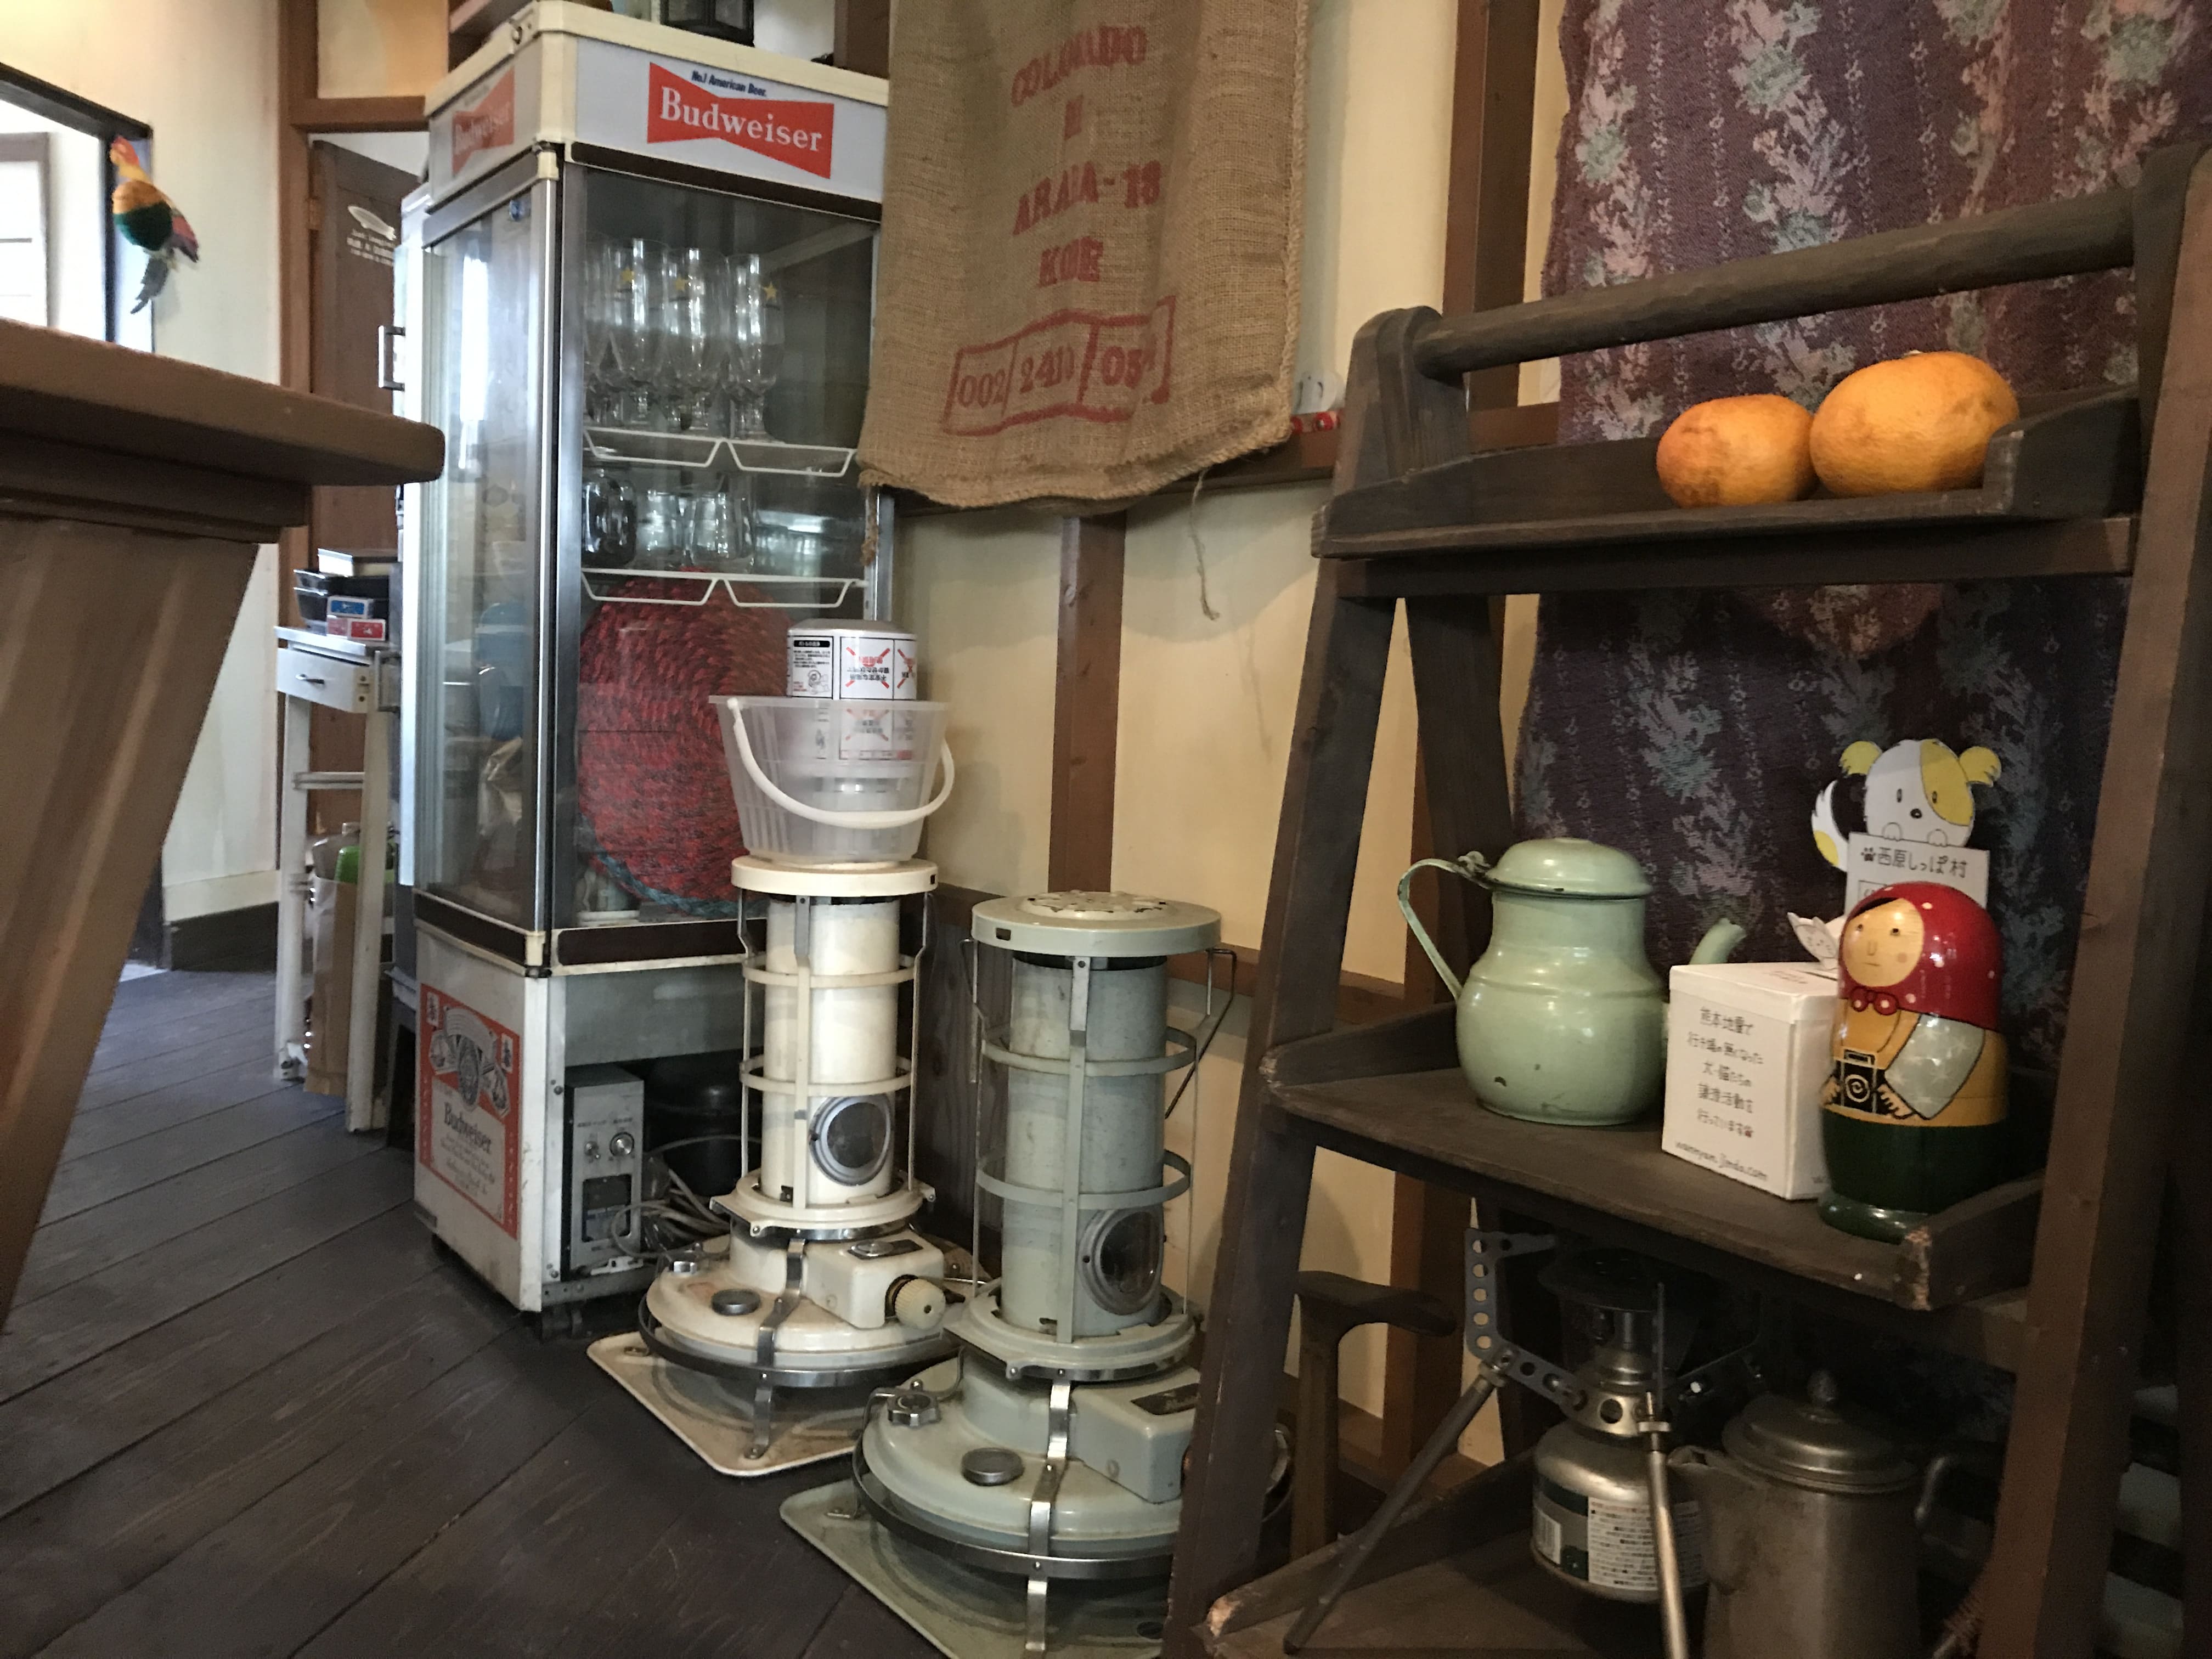 antique-miscellaneous-goods-cafe01